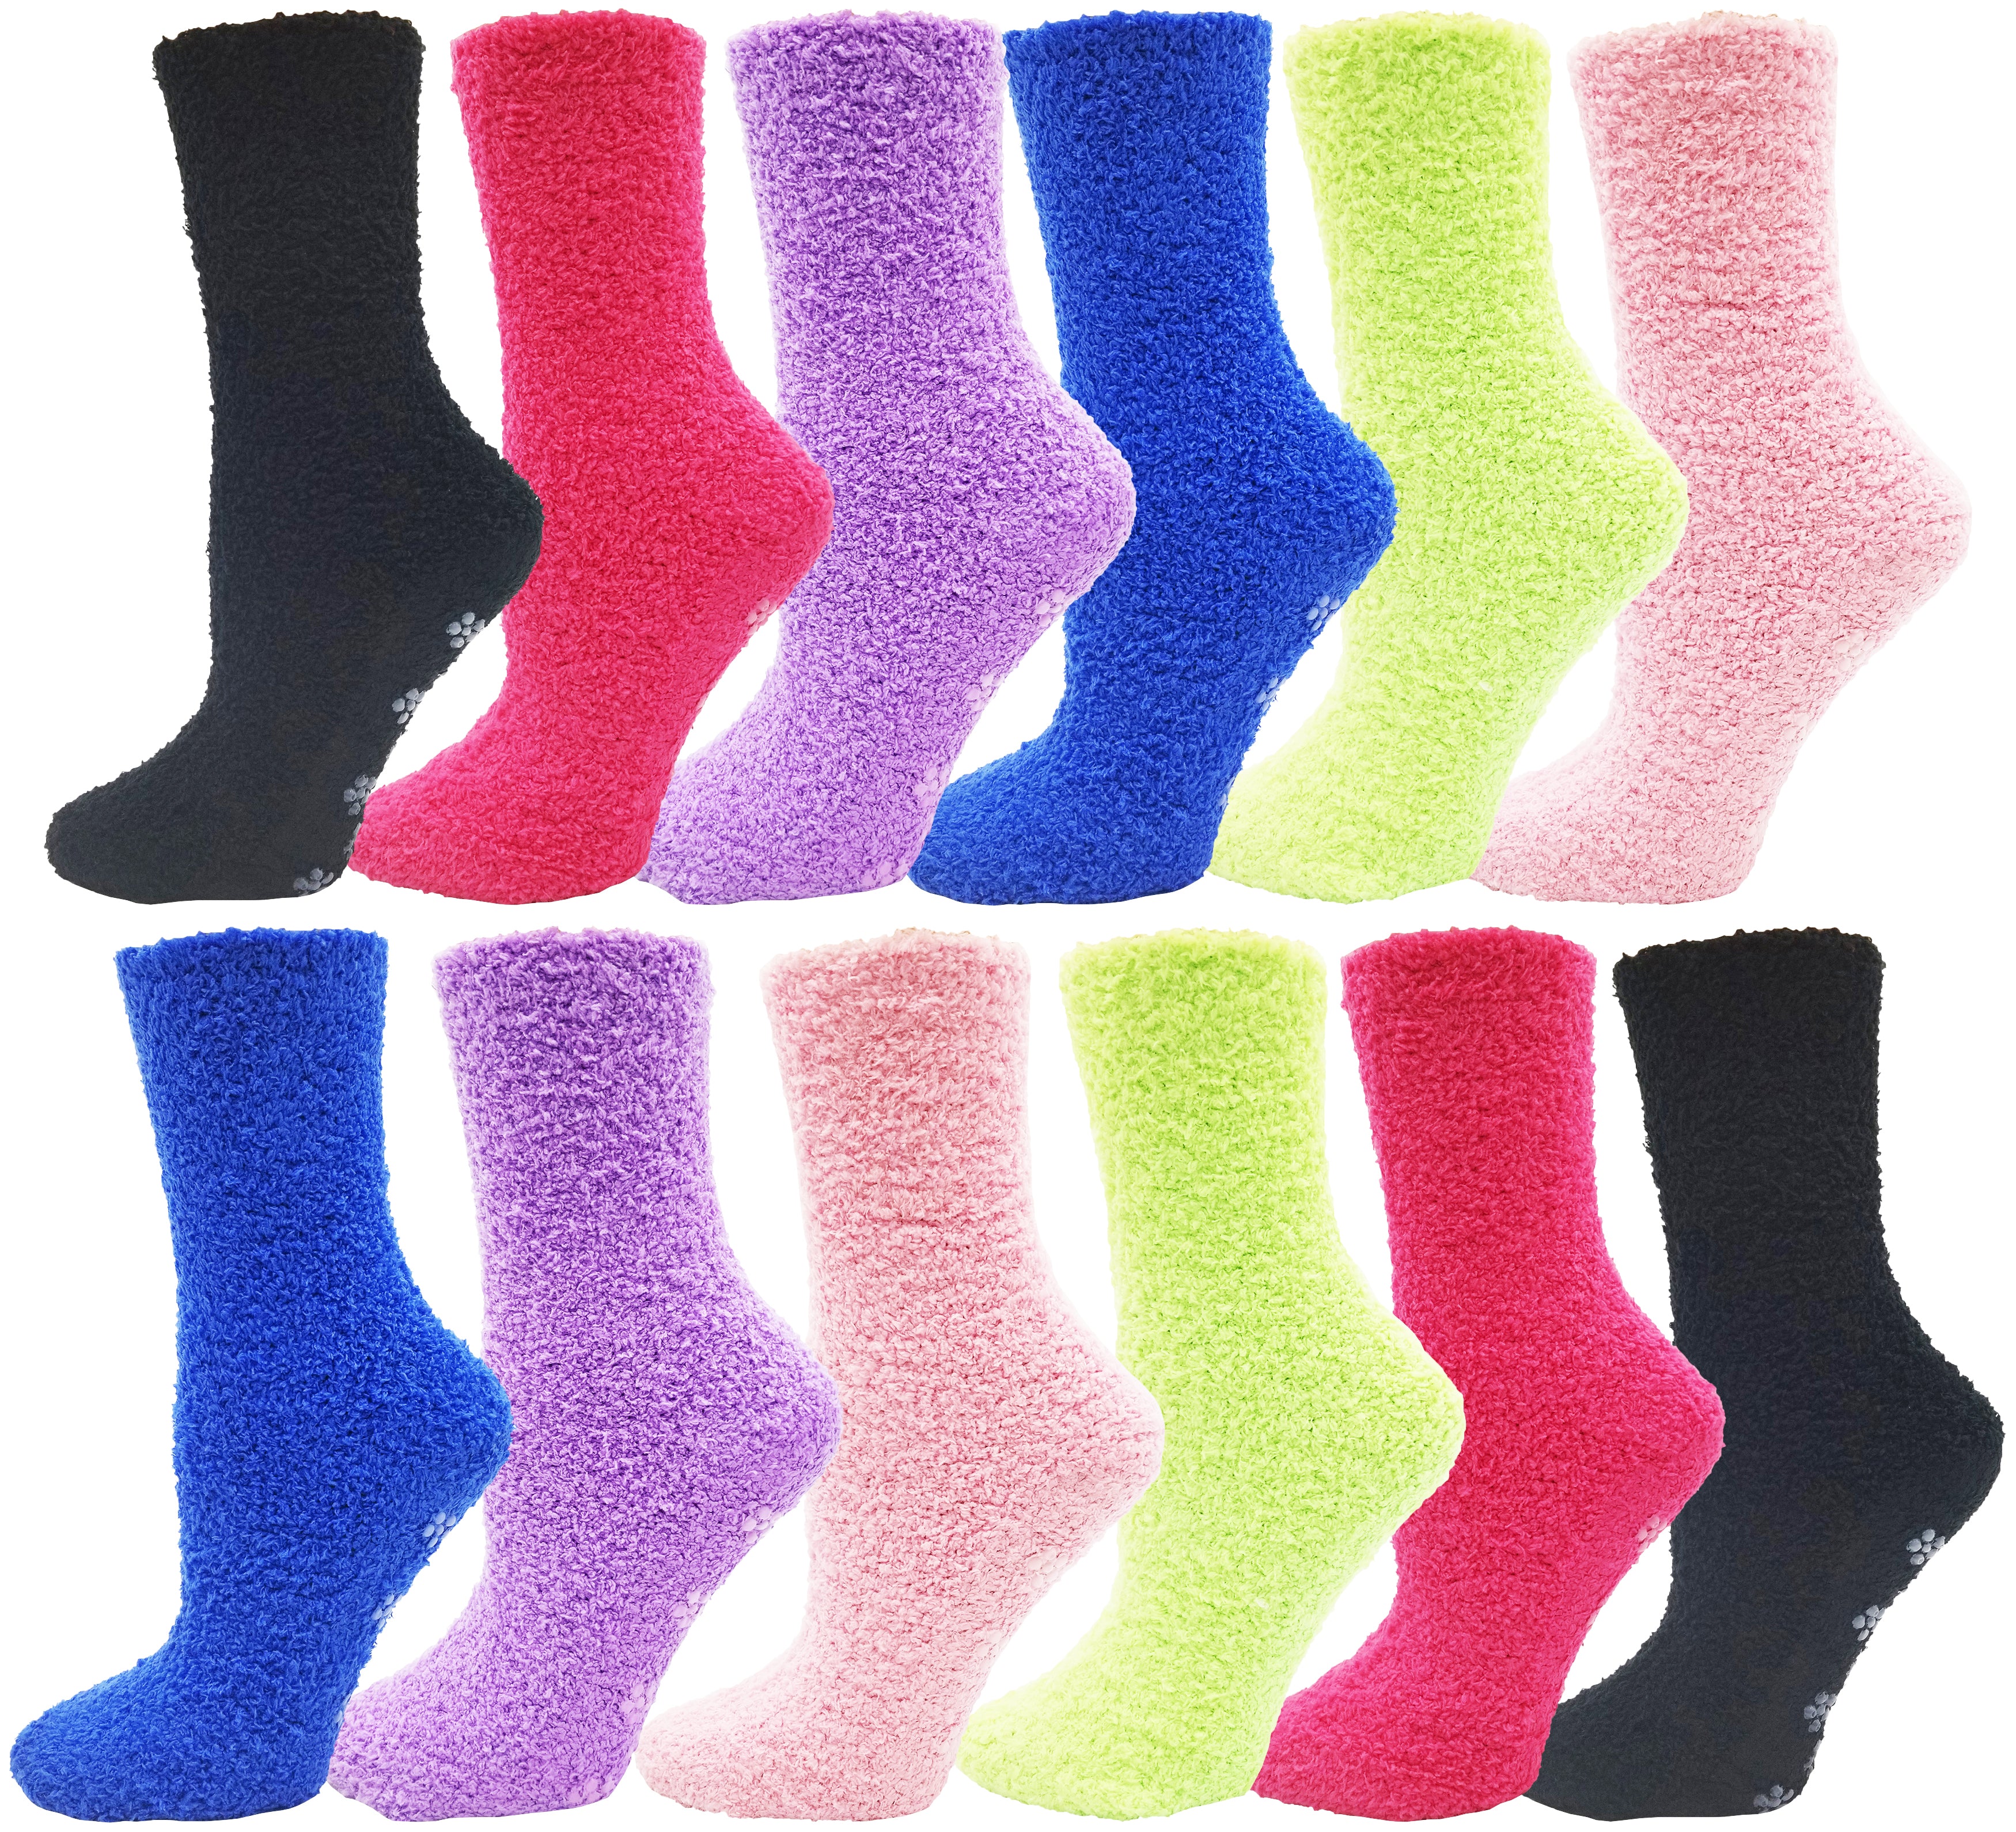 Slipper Socks – Forever England Trade